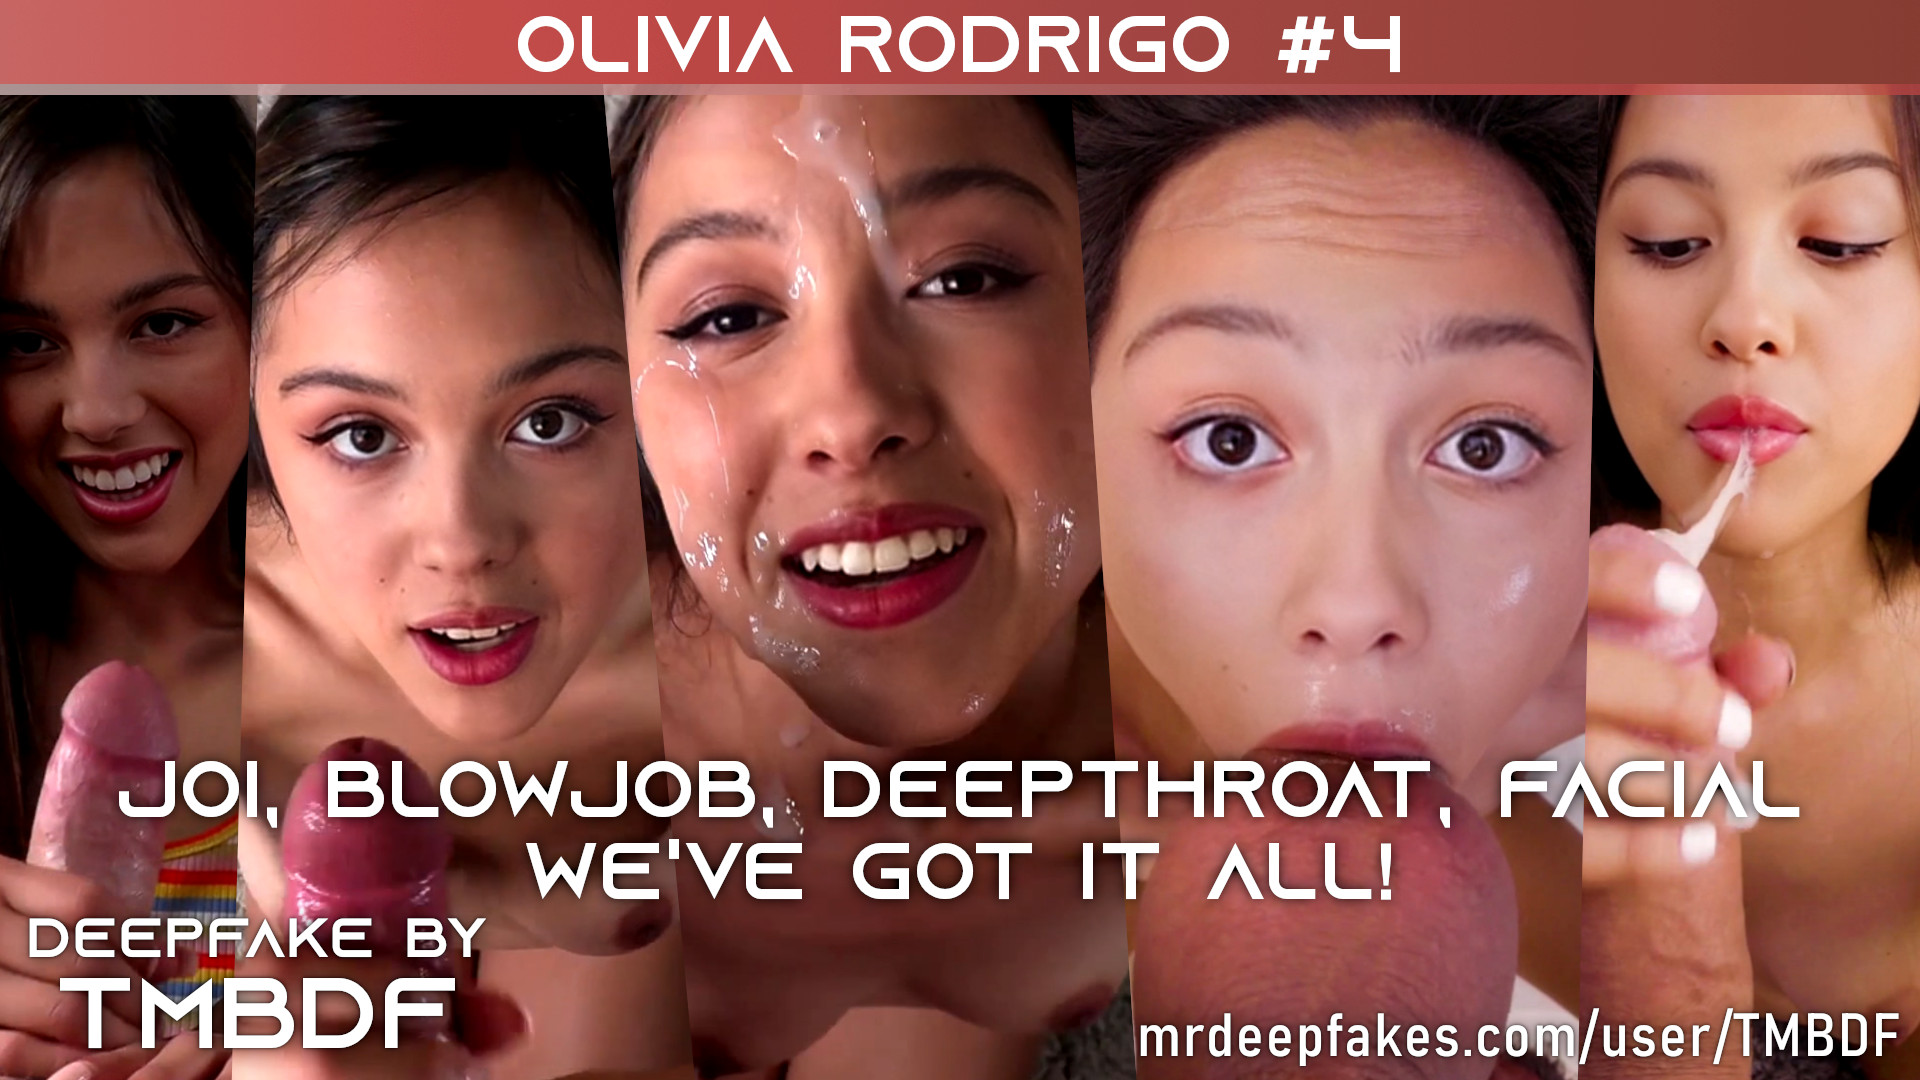 Olivia Rodrigo #4 - PREVIEW - Full version (23 min.) in description